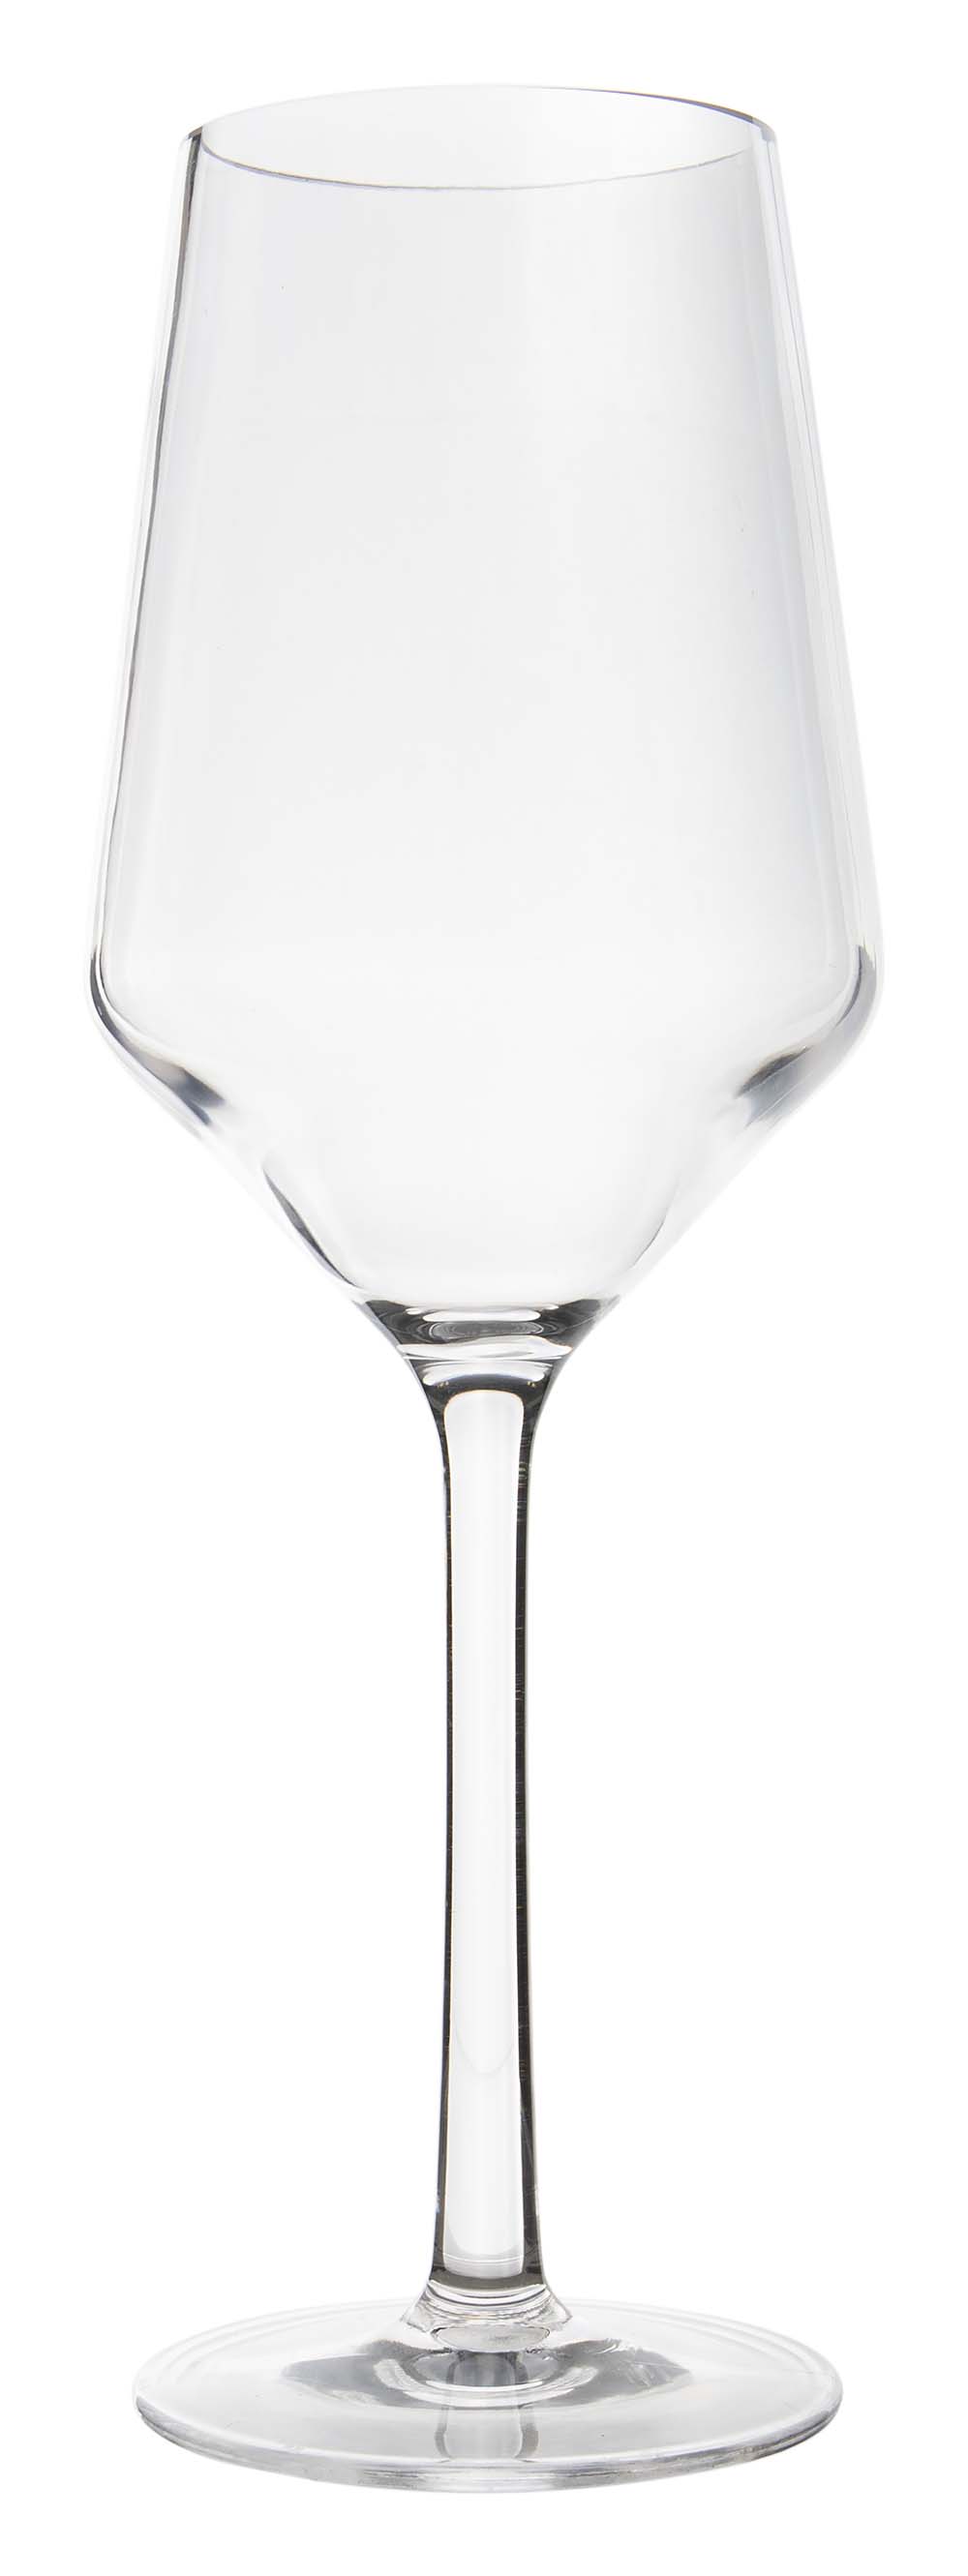 6914180 Een stijlvol witte wijnglas uit de Solid line collectie. Vrijwel onbreekbaar door hoogwaardig MS materiaal. Bestaat uit een set van 2 stuks. Zeer gemakkelijk te reinigen en langdurig te gebruiken, wat het glas erg duurzaam maakt. Daarnaast is het witte wijnglas erg lichtgewicht en krasbestendig. Inhoud: 275 ml.